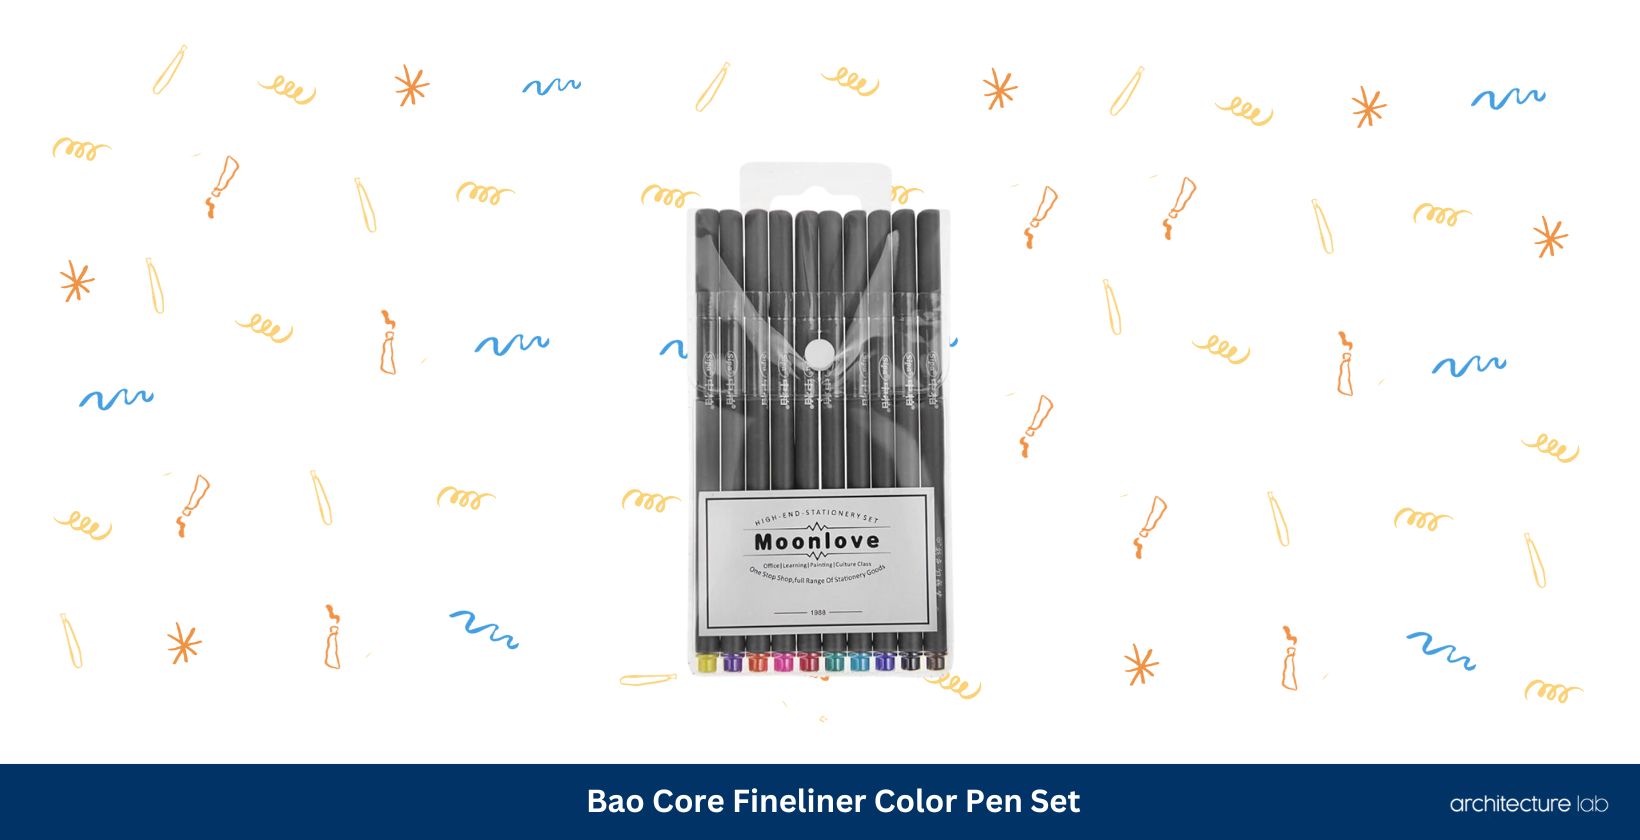 Bao core fineliner color pen set